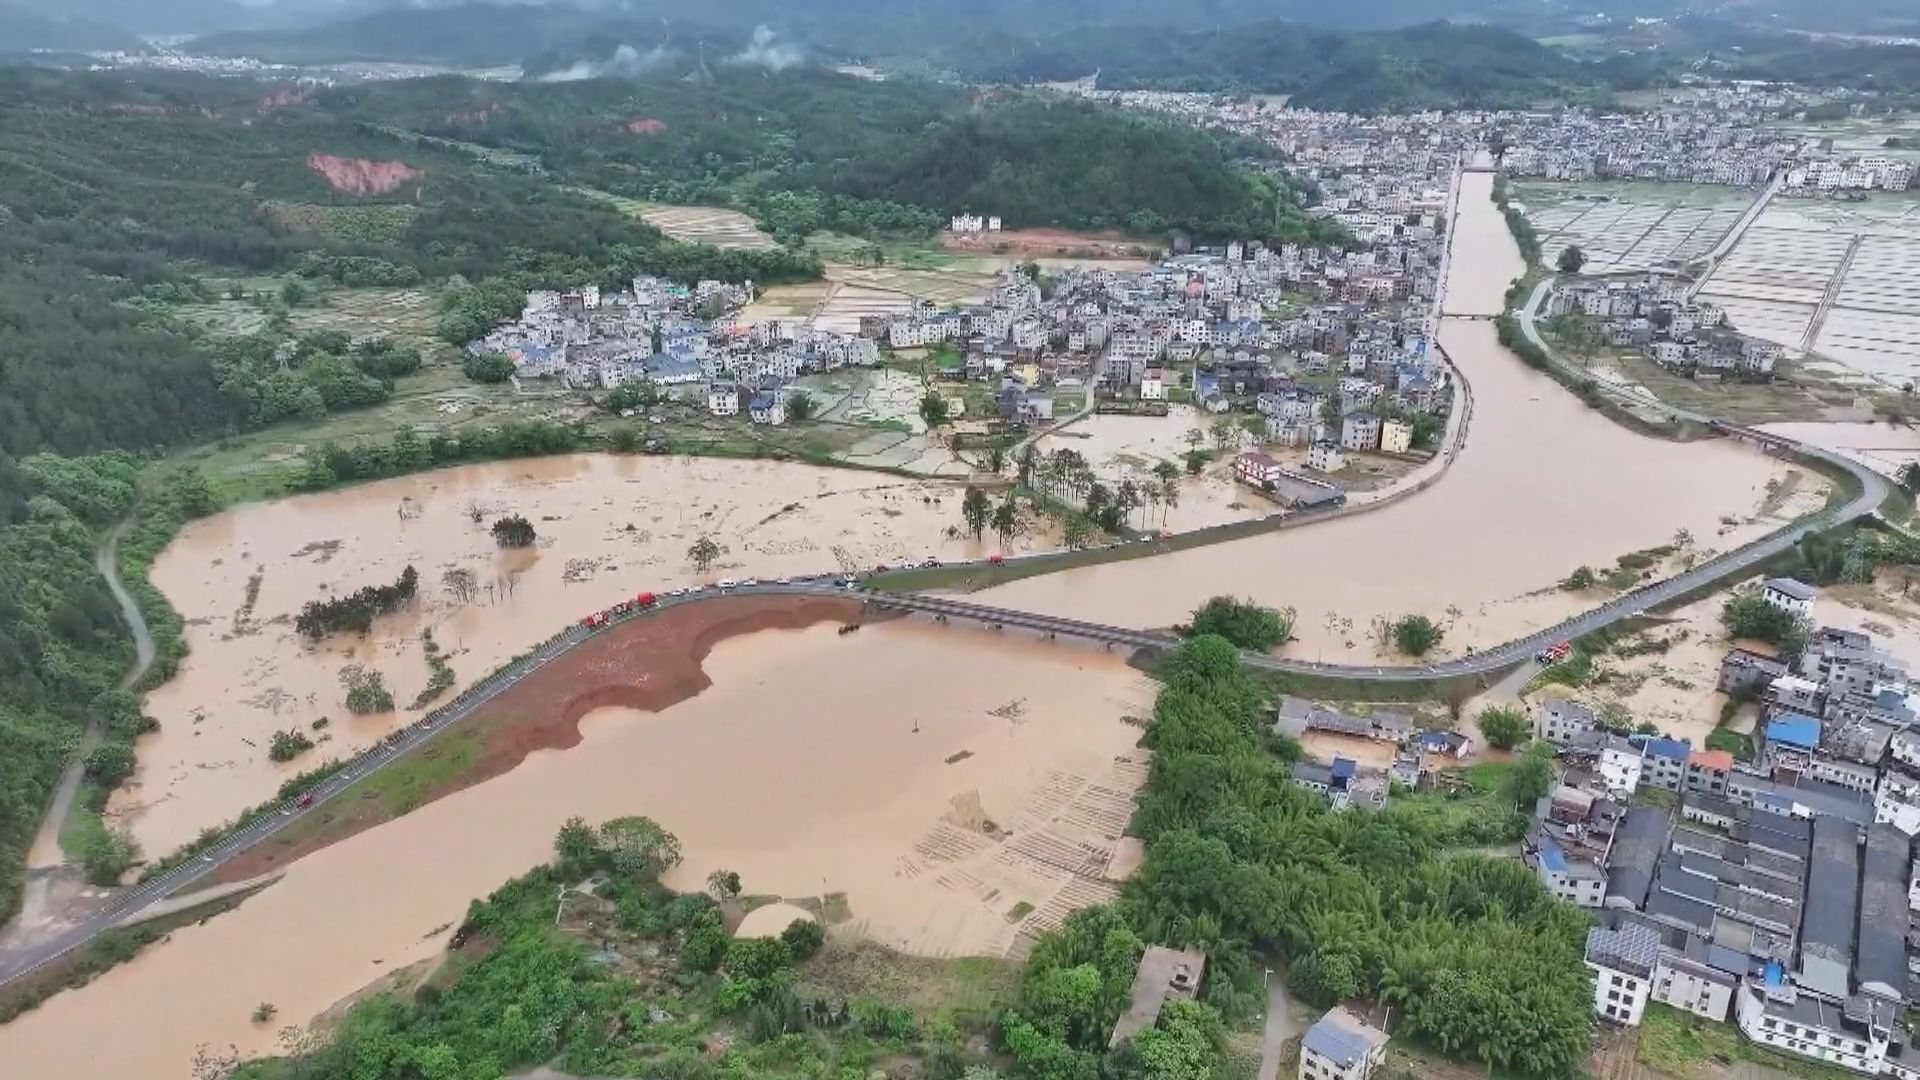 廣東洪災導致4死10人失蹤